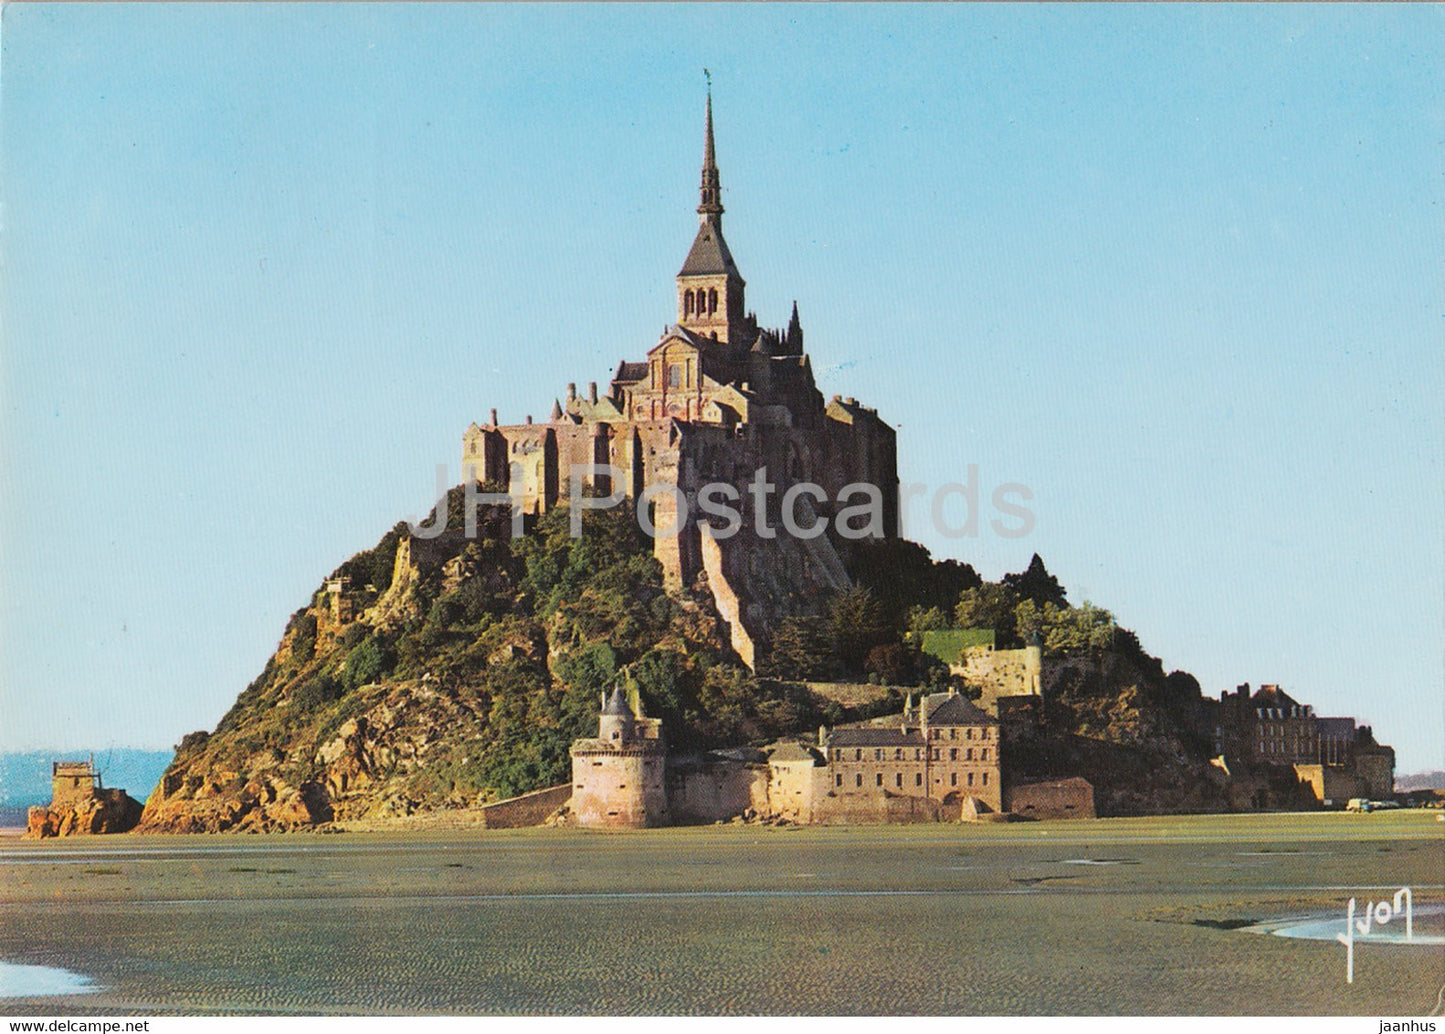 Le Mont Saint Michel - Vue Generale - Couleurs et Lumiere de France - 1985 - France - used - JH Postcards